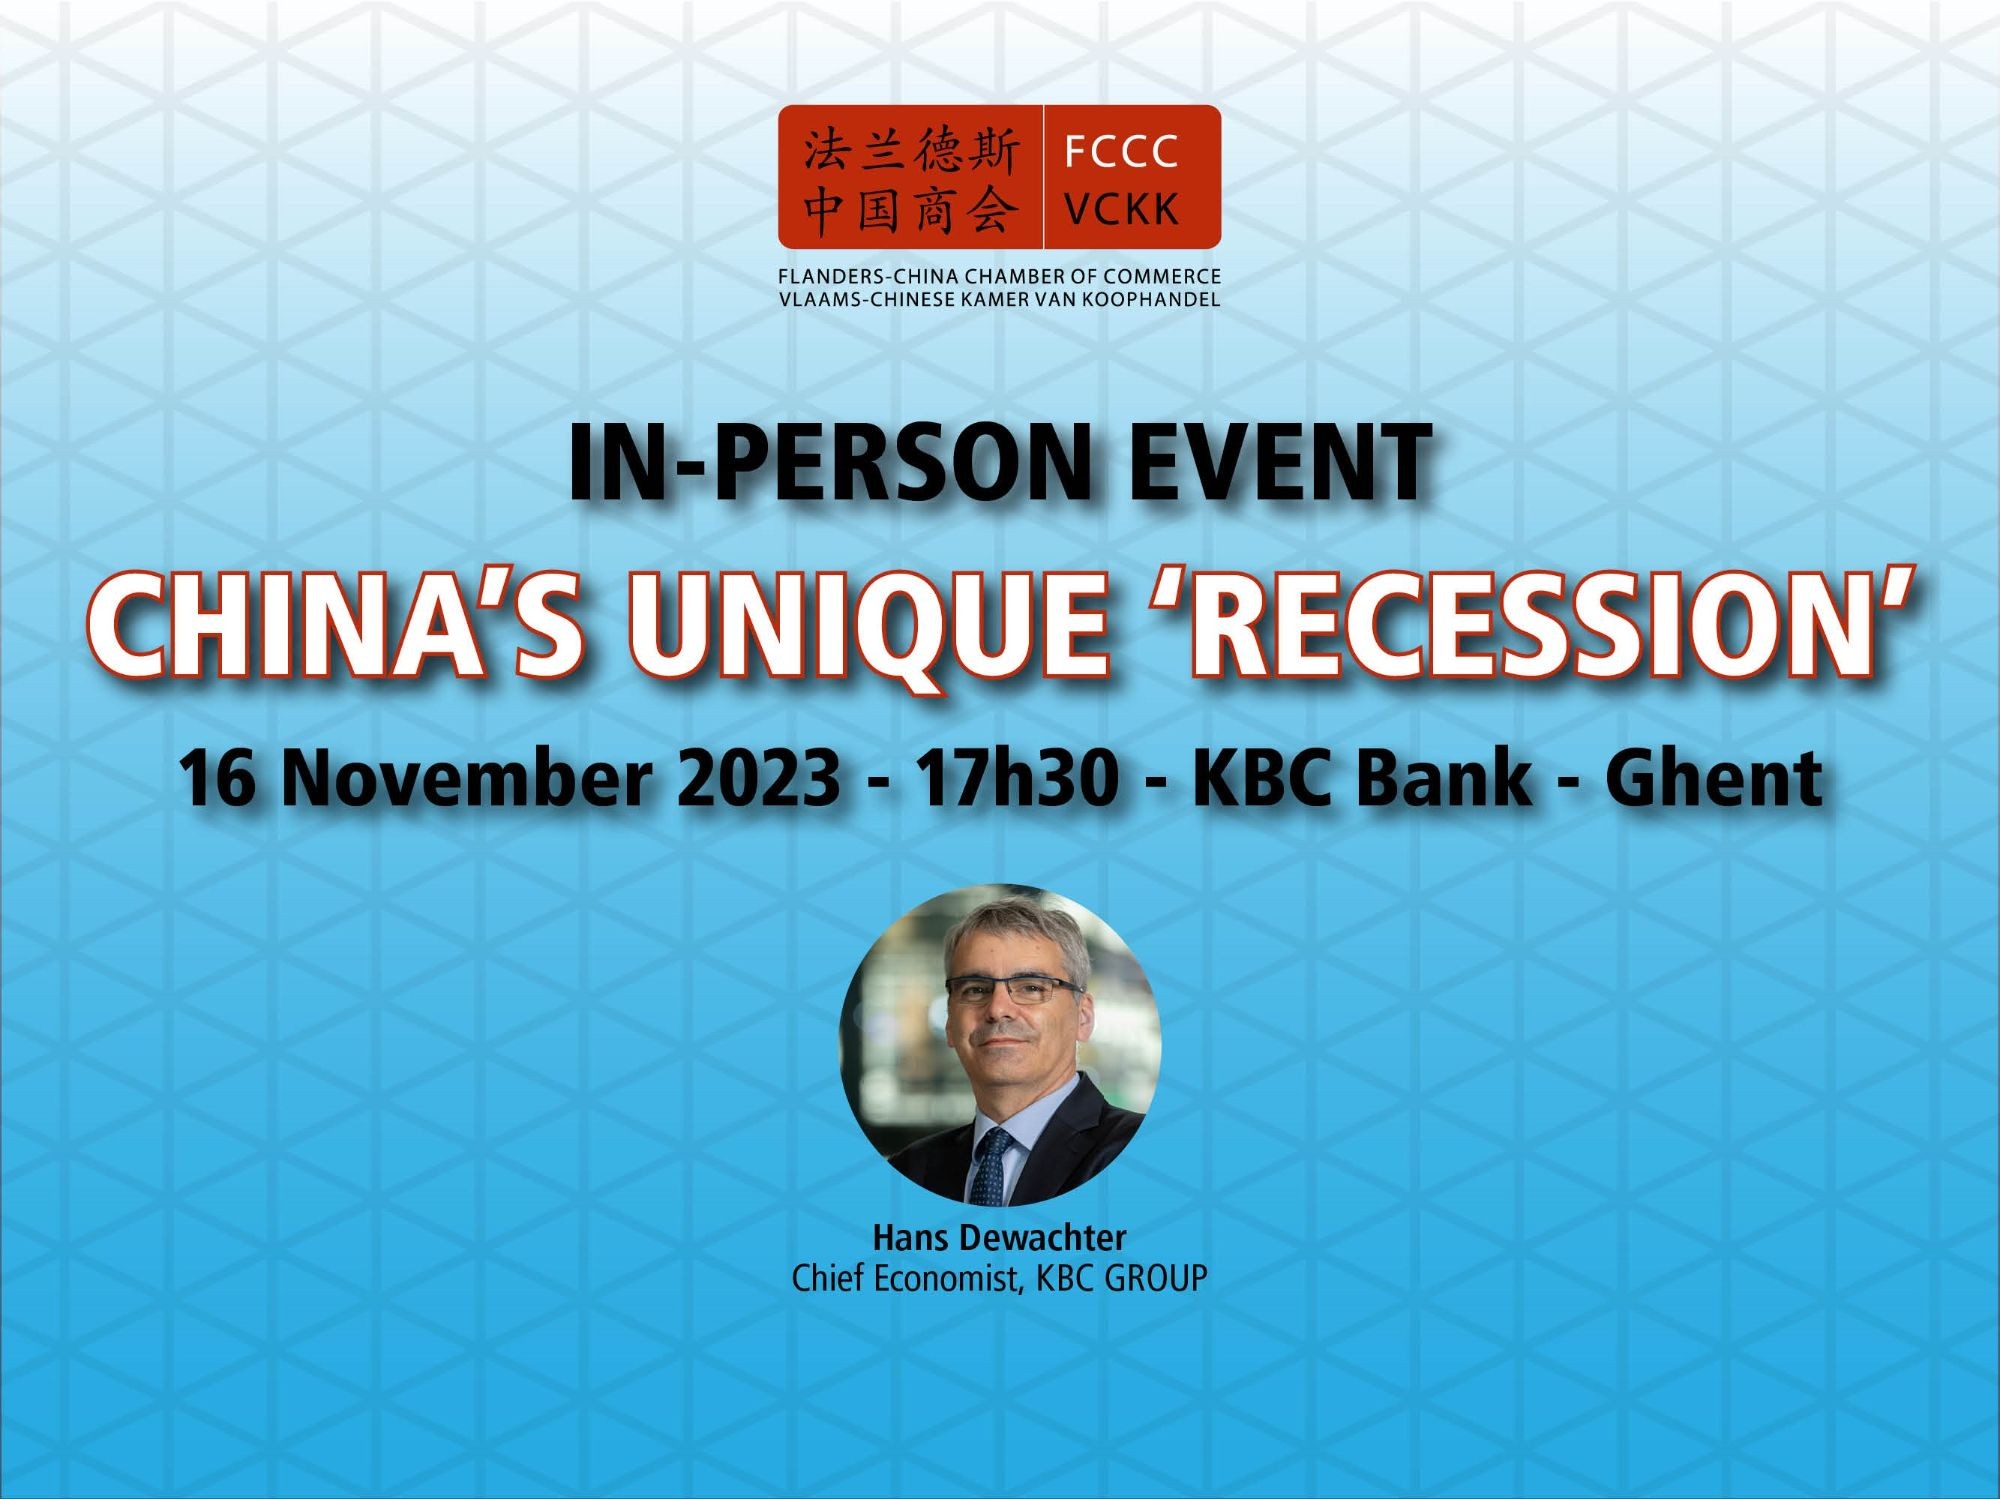 In-person event: China's Unique 'Recession' - 16 November 2023 - 17h30 - Gent